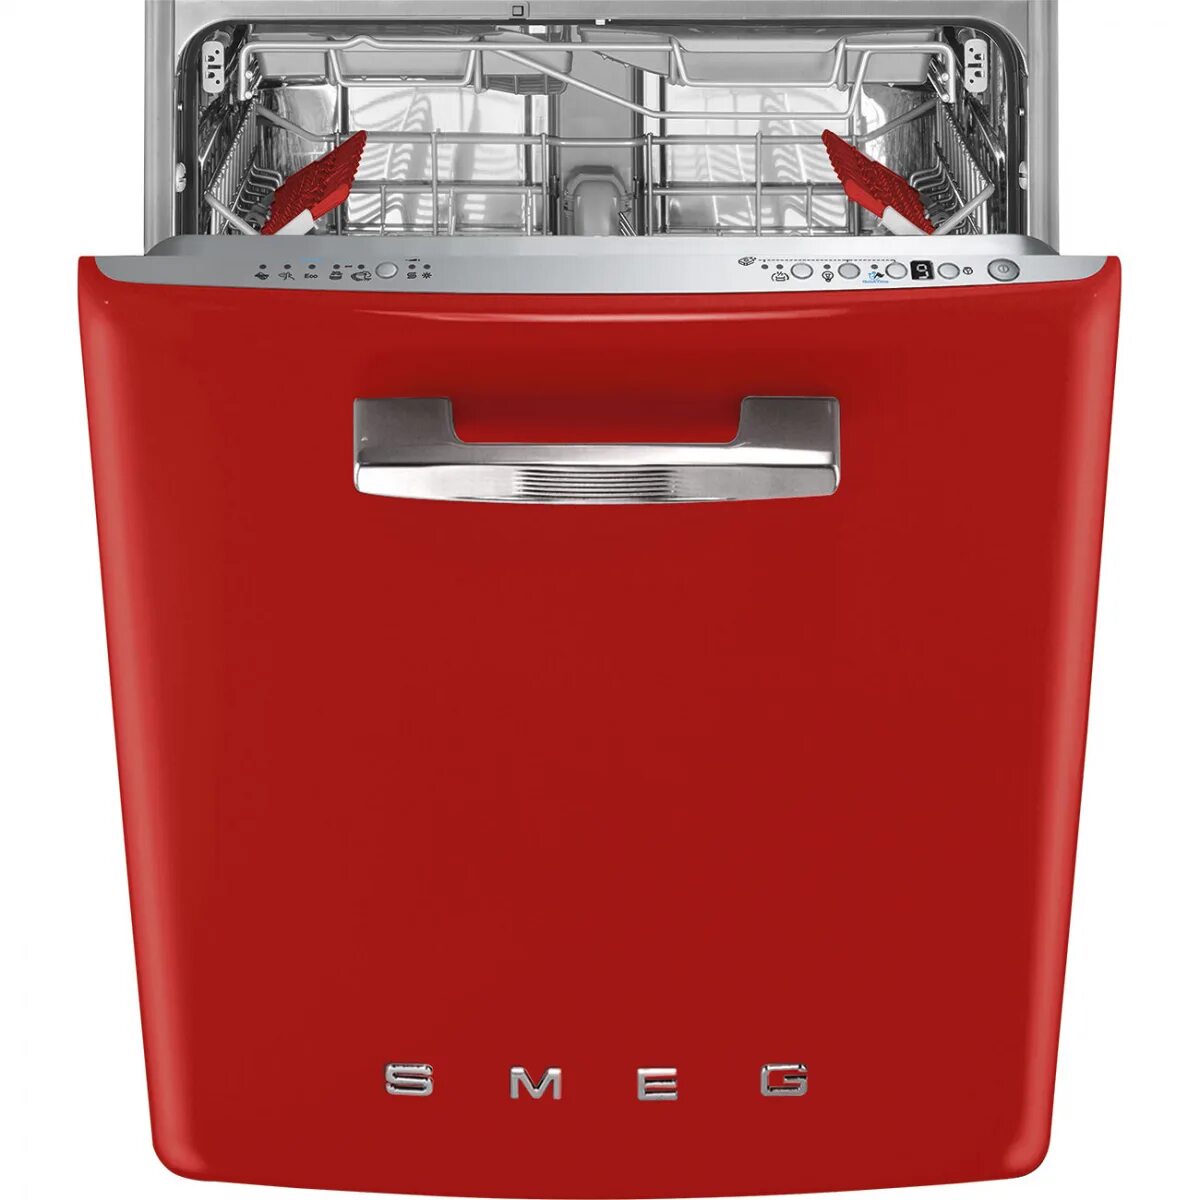 Посудомоечная машина Smeg st2fabr2. Посудомоечная машина Smeg st2fabcr. Смег посудомоечная машина встраиваемая. Посудомоечная машина Смег 45 см встраиваемая. Посудомоечная машина 60 см купить в спб